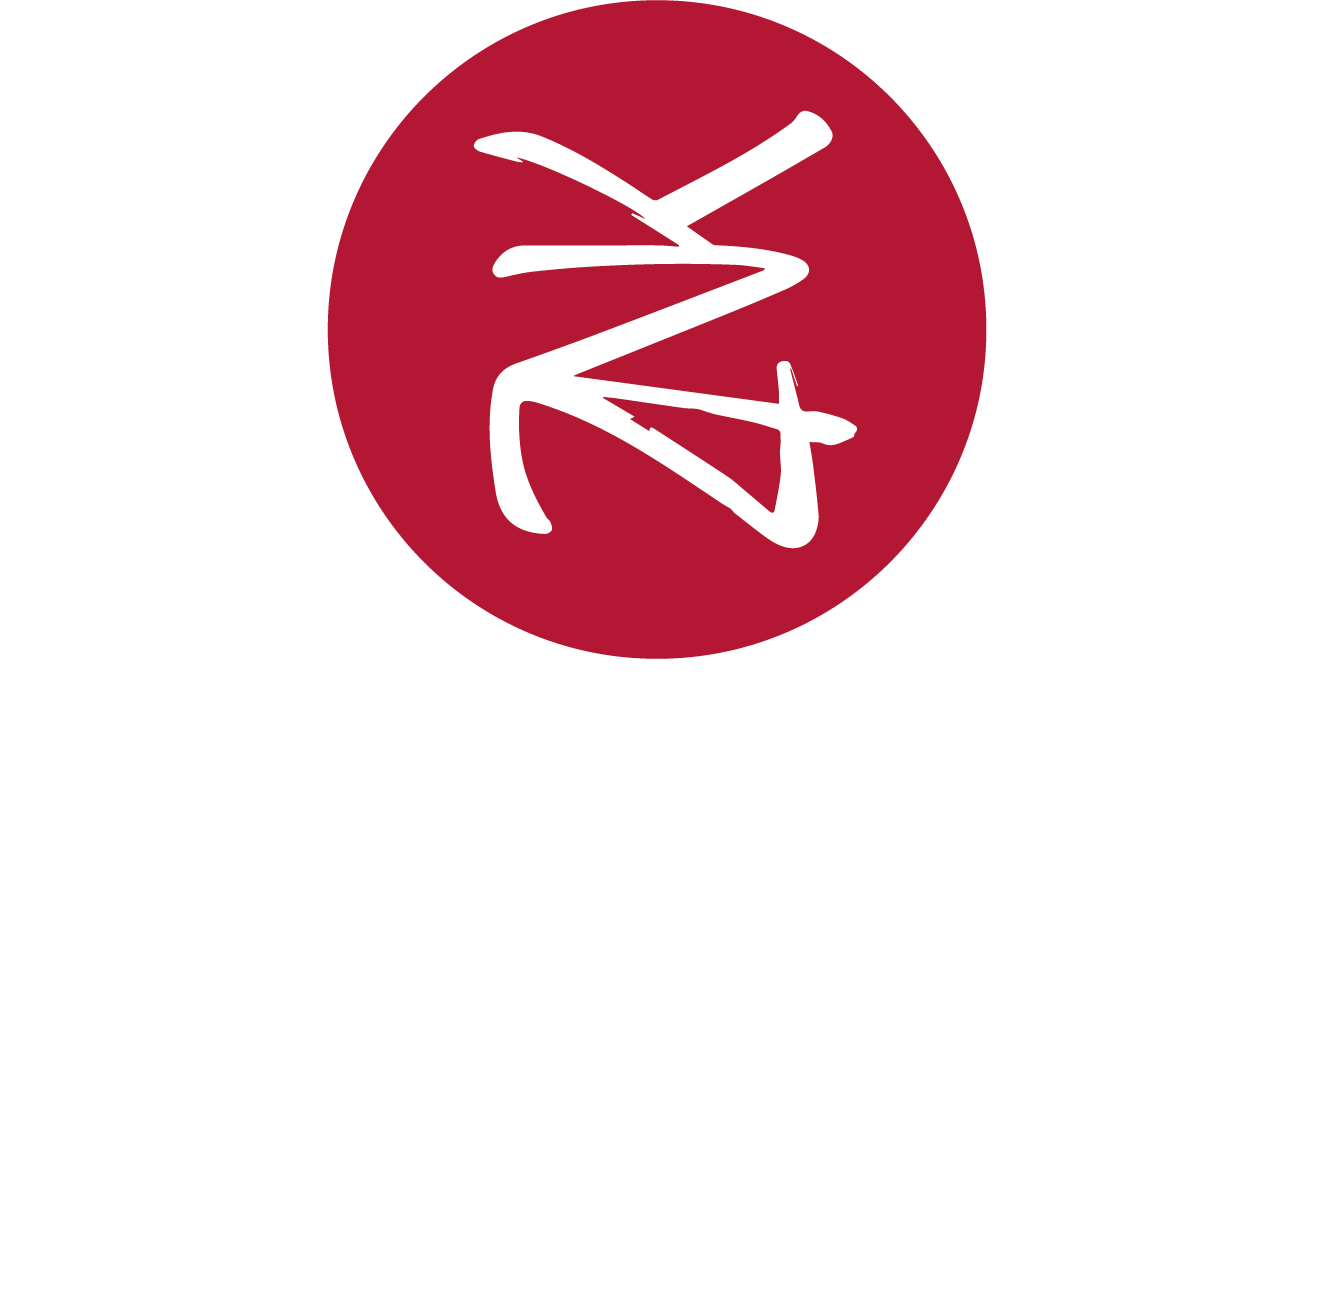 ZENIKA PTE LTD is hiring on Meet.jobs!